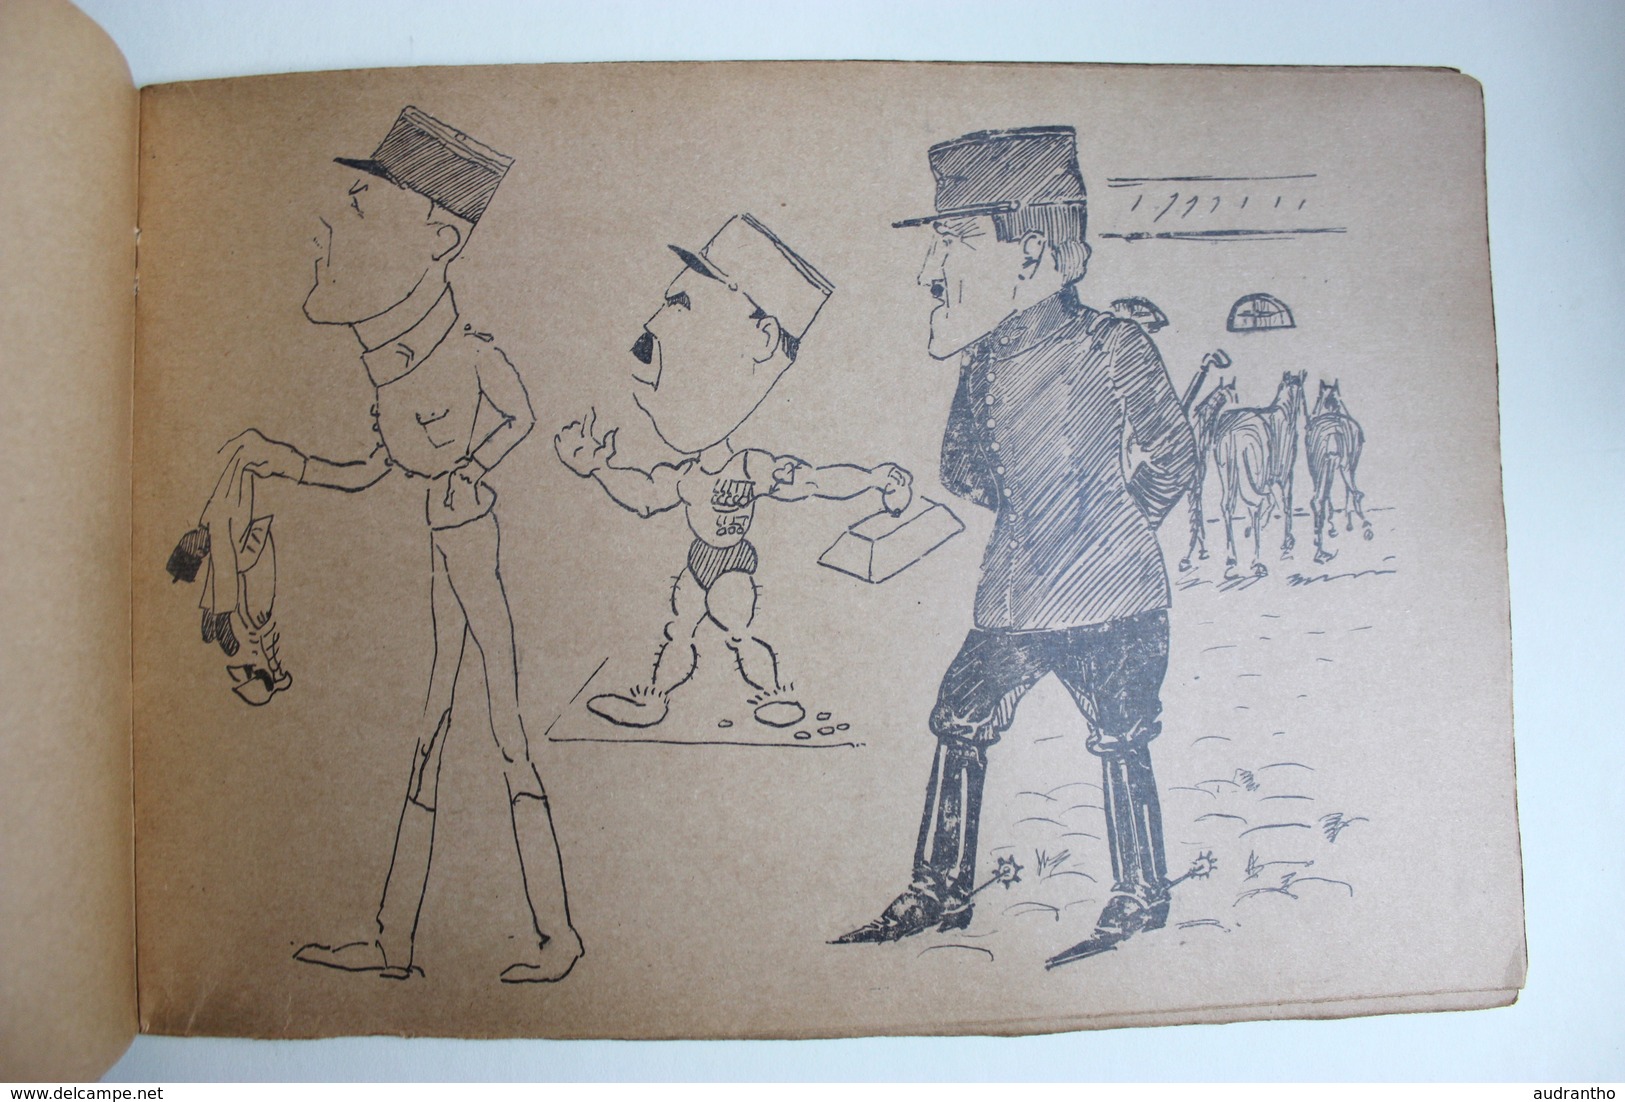 Livret de caricatures SAPEUR école militaire d'application du génie 1928